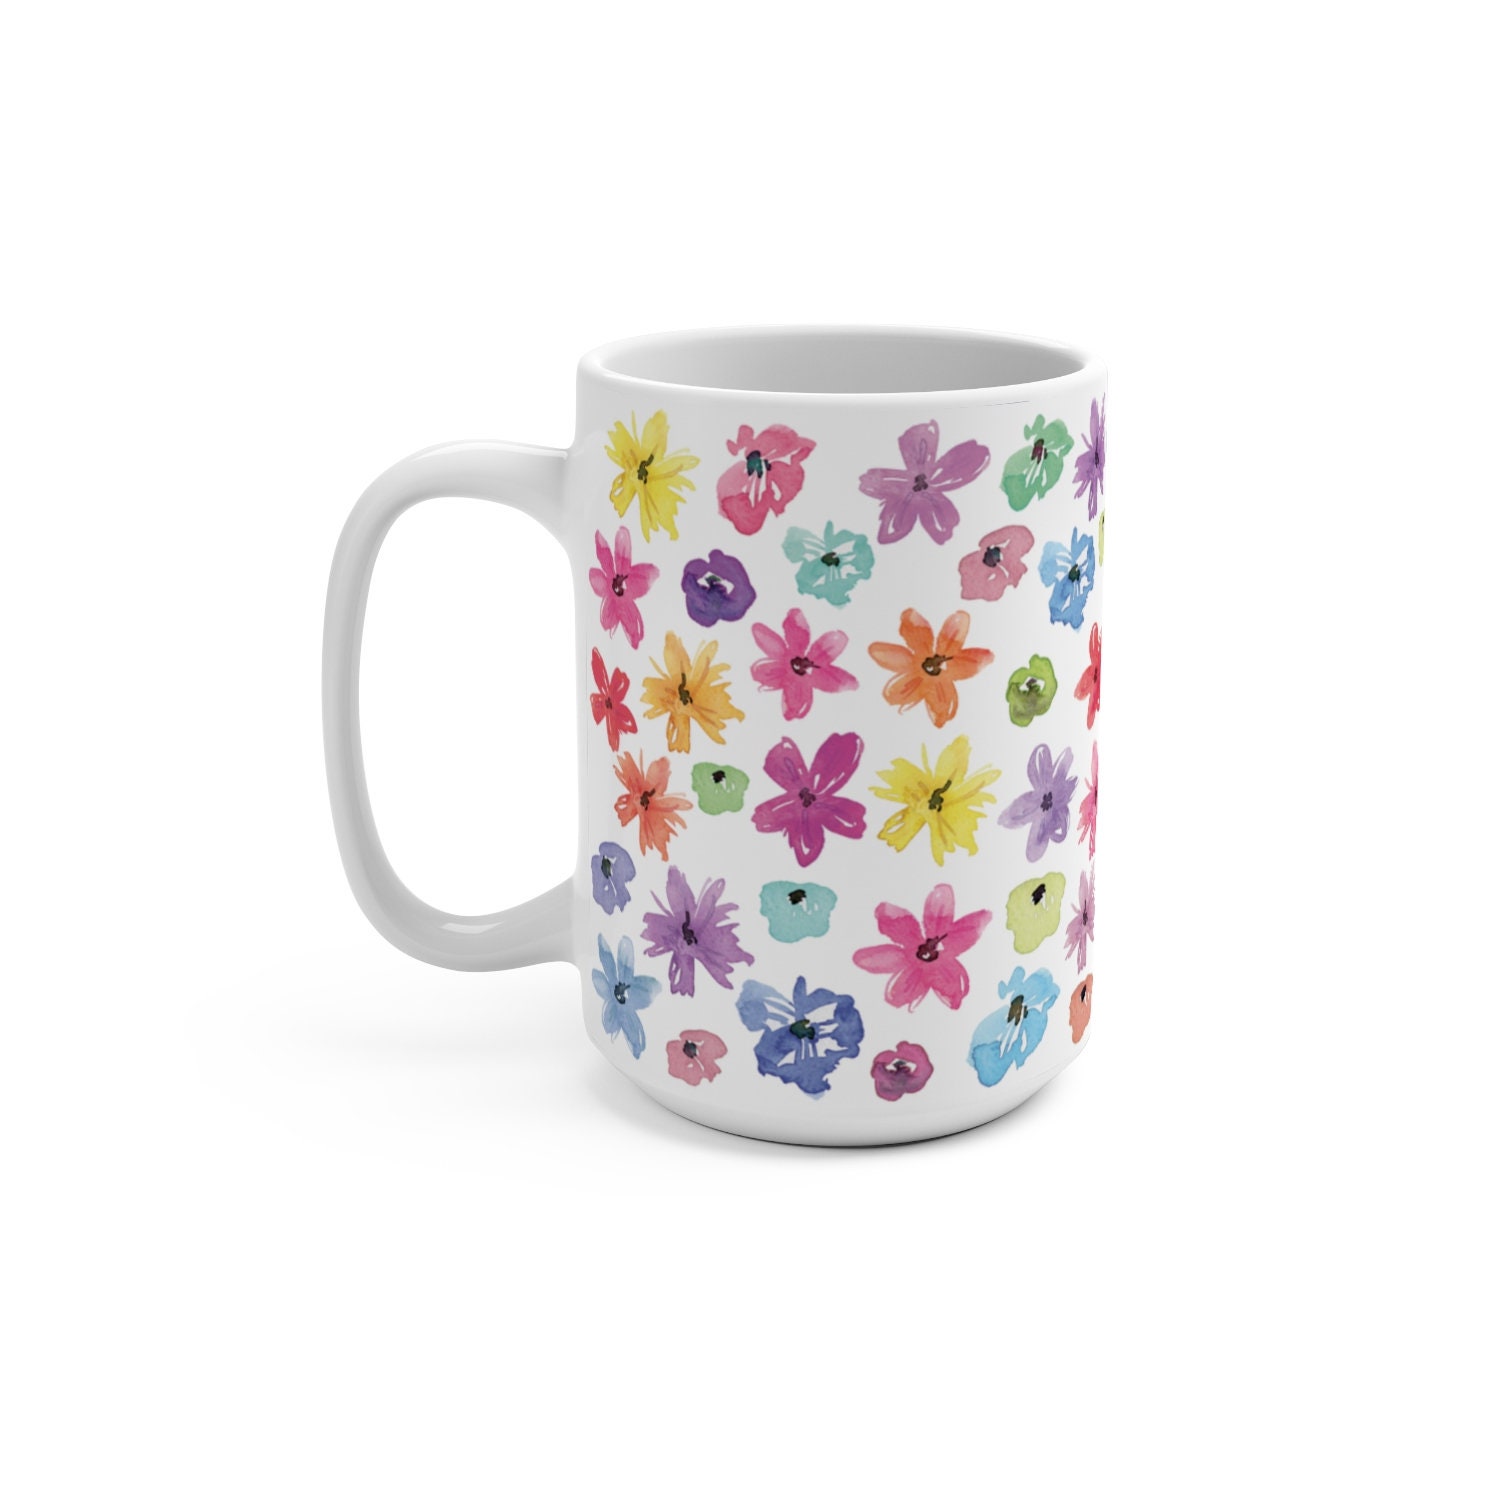 Wildflower garden mug dainty flower mug colorful flower mug | Etsy